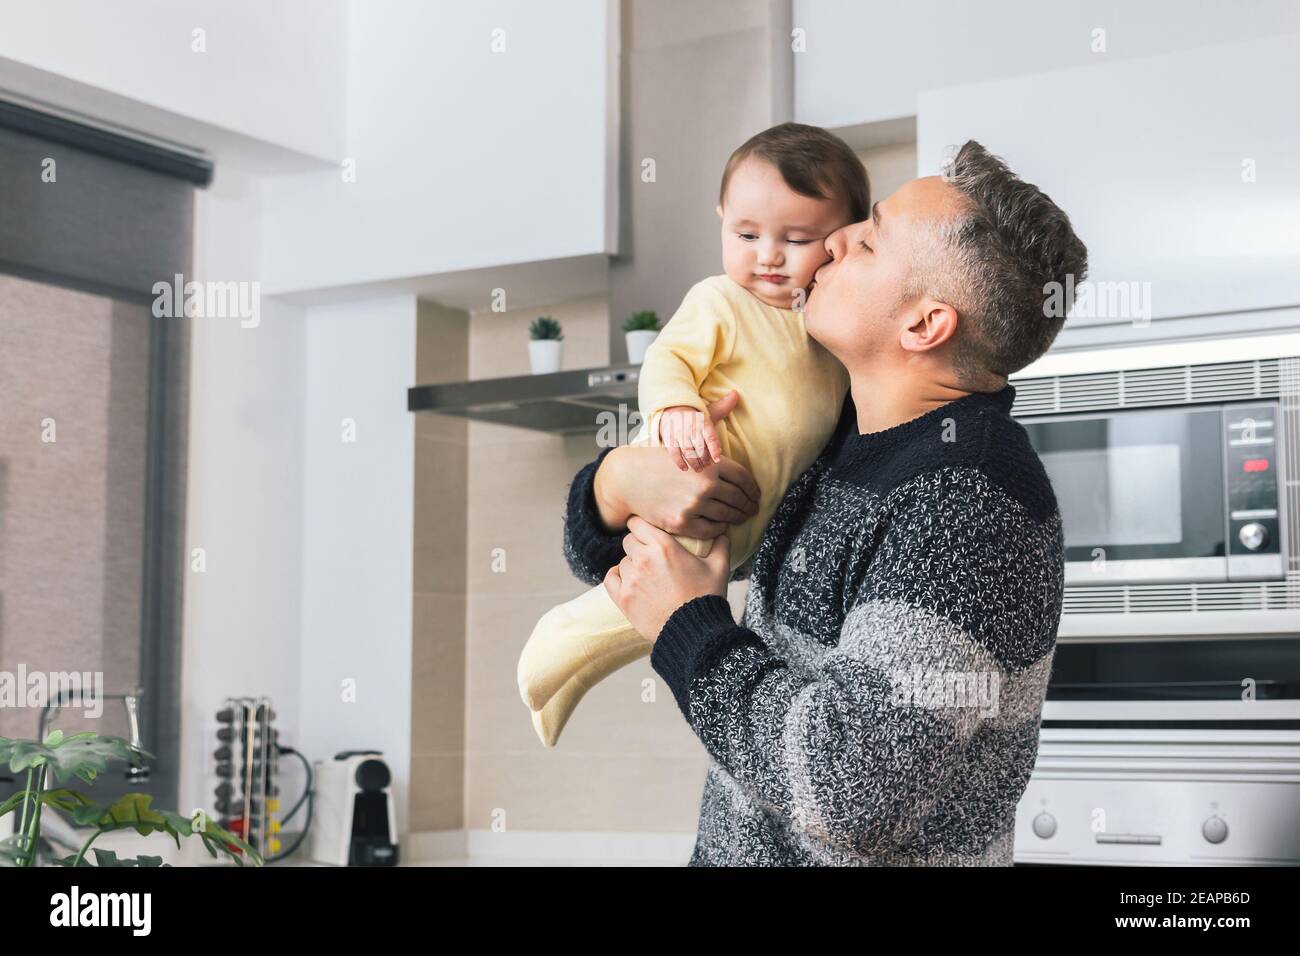 Stock Foto von jungen alleinerziehenden Vater küssen sein kleines Baby, während er ihn in den Armen. Mann und Kind, Eltern umarmen Kind zärtlichen Moment. Single Dad fa Stockfoto